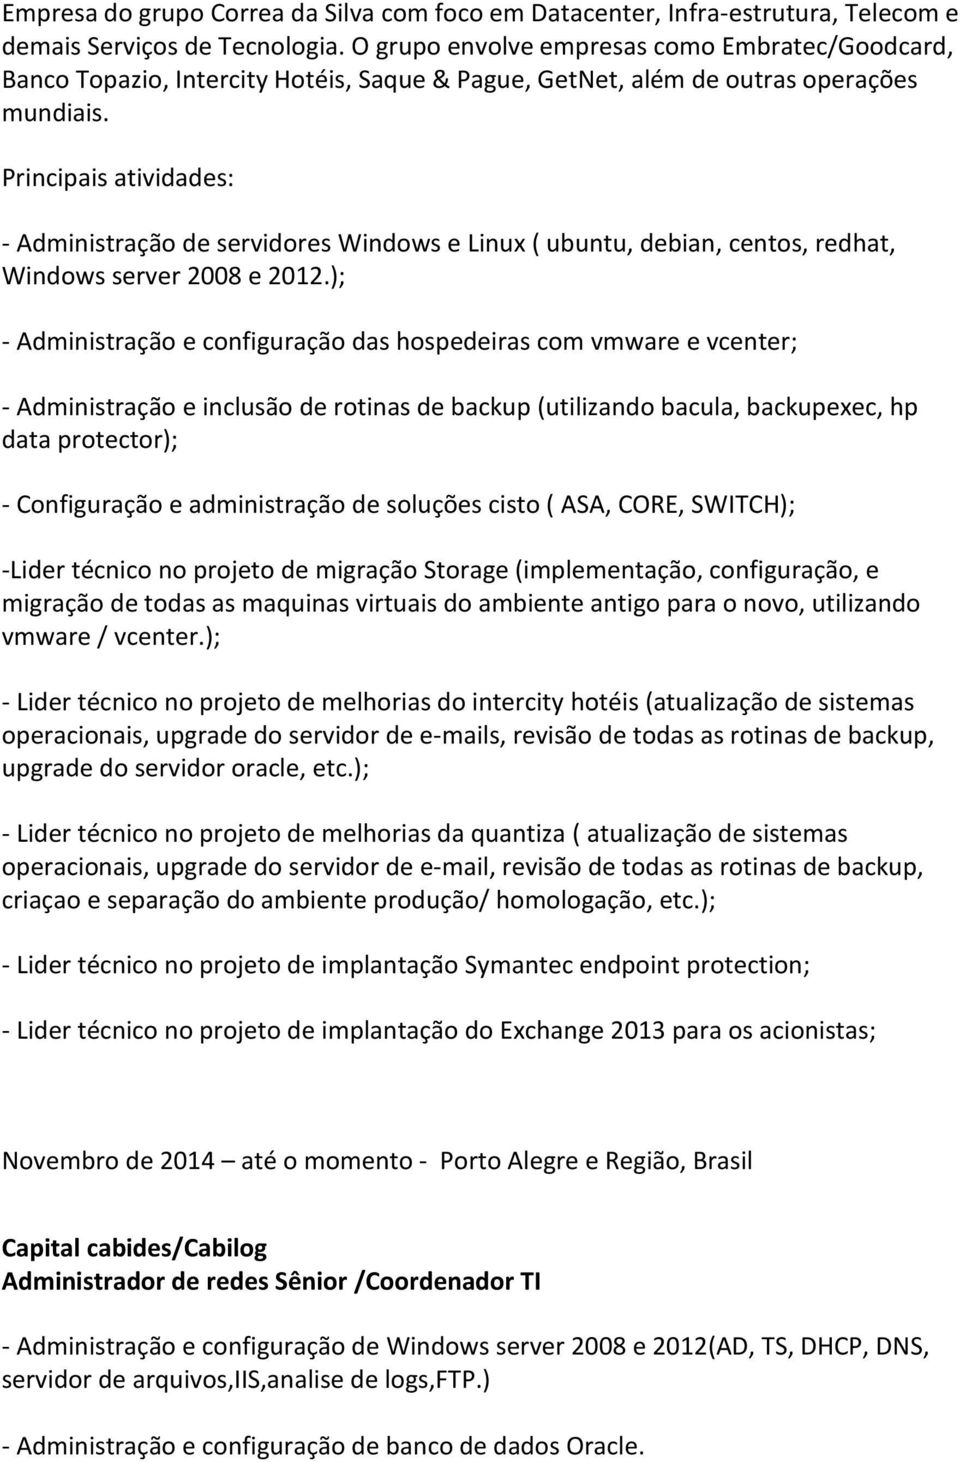 Principais atividades: - Administração de servidores Windows e Linux ( ubuntu, debian, centos, redhat, Windows server 2008 e 2012.